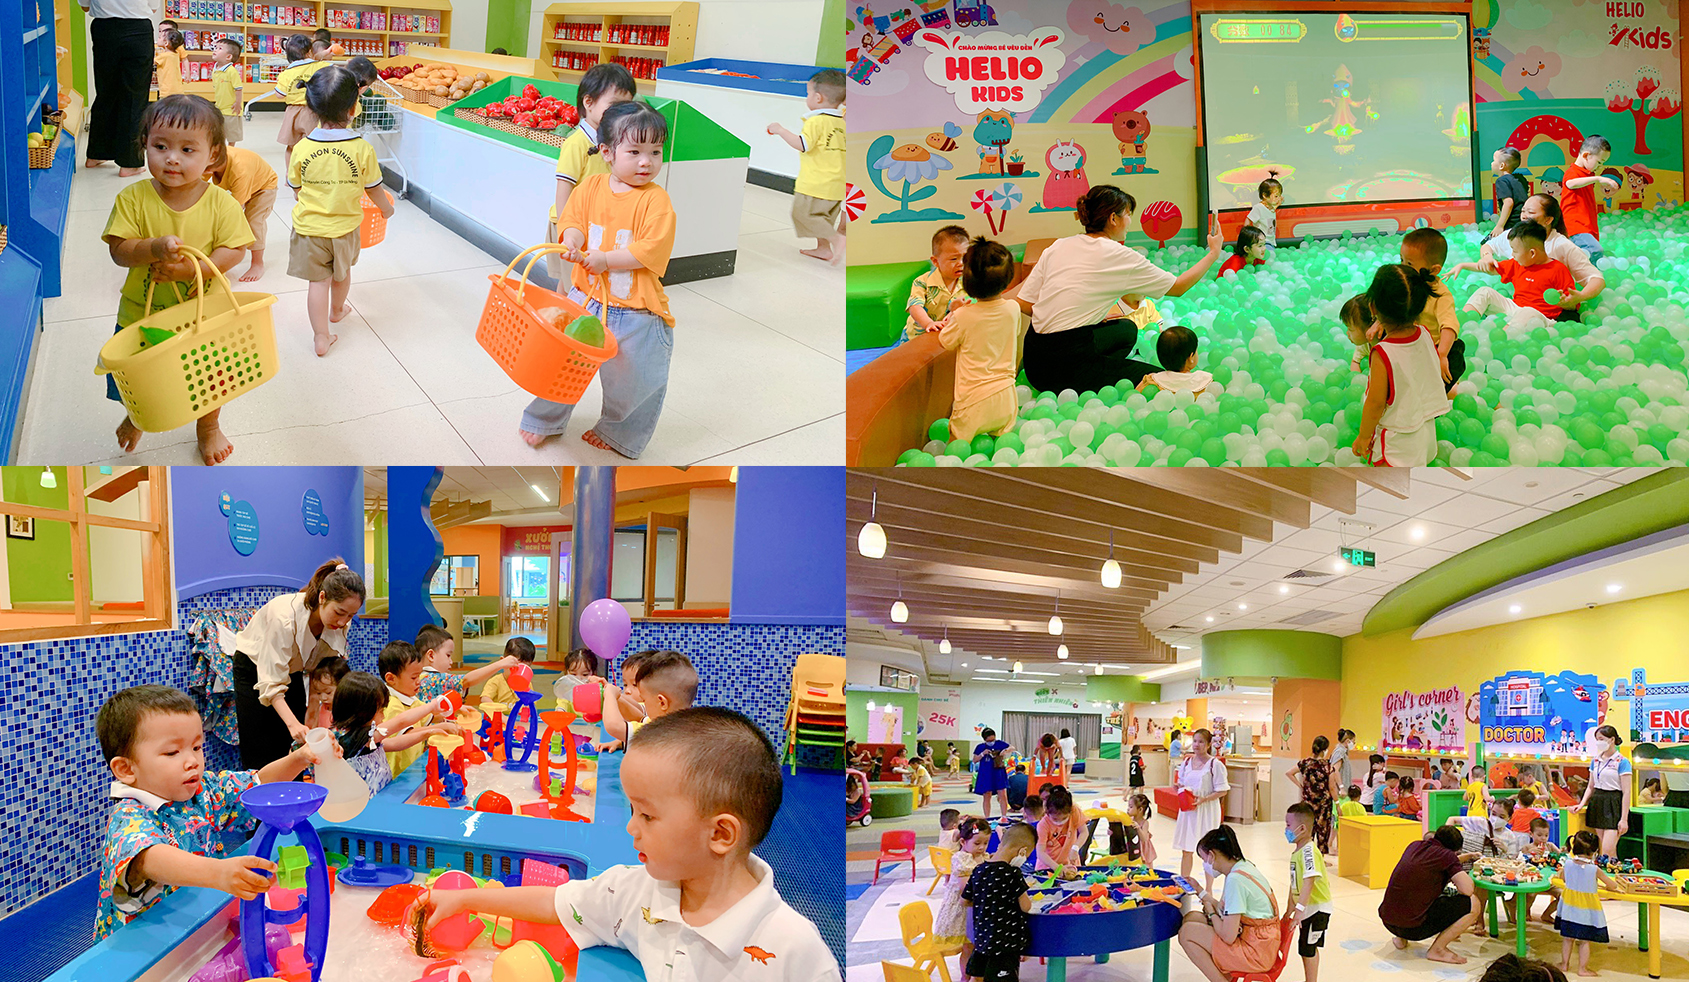 Địa điểm tổ chức sinh nhật cho bé ở Đà Nẵng